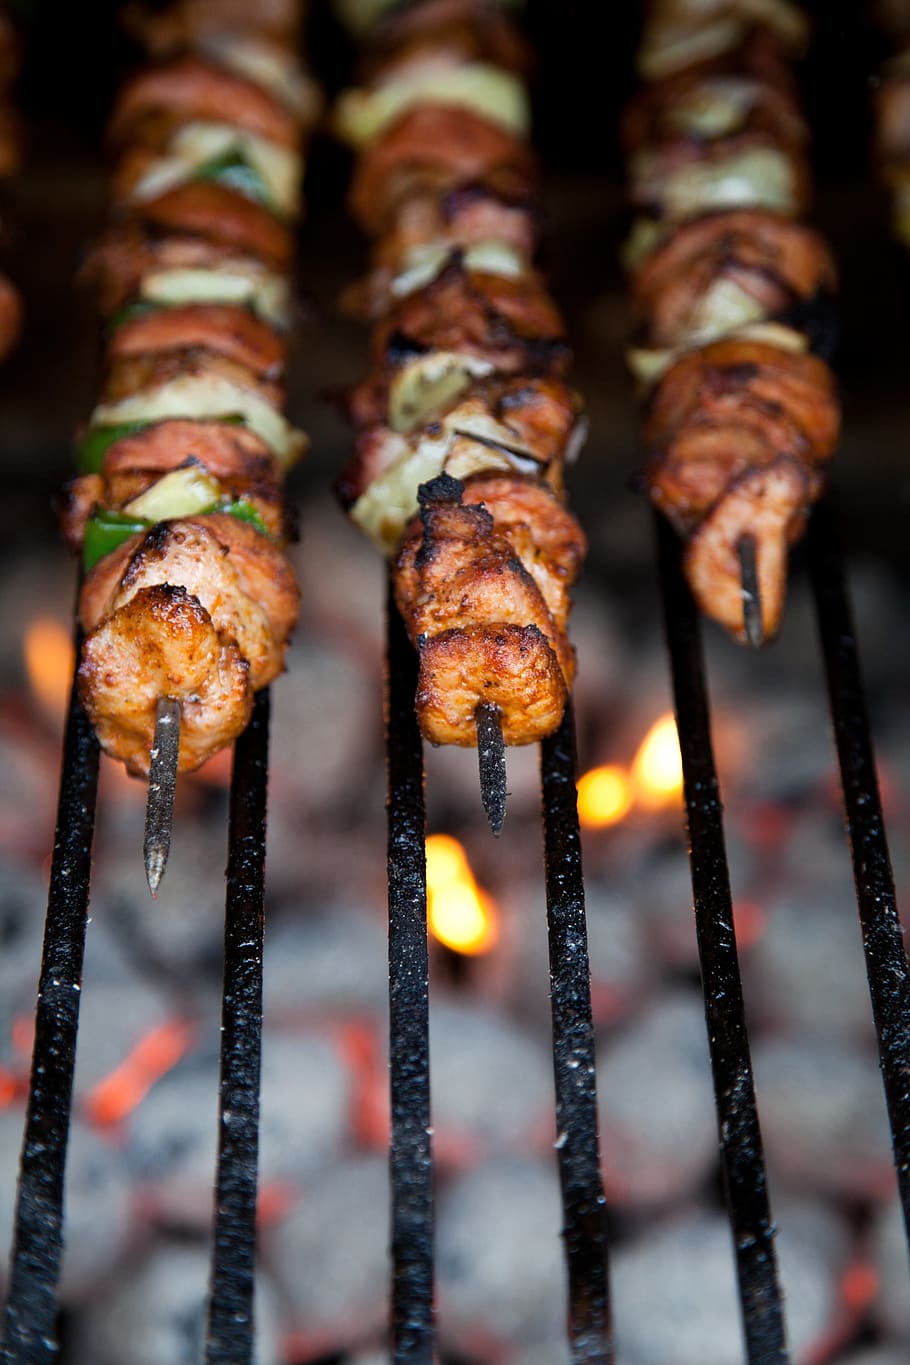 selectiva, fotografía de enfoque, a la parrilla, kebab, barbacoa, carne de res, pollo, cocina, cena, fuego